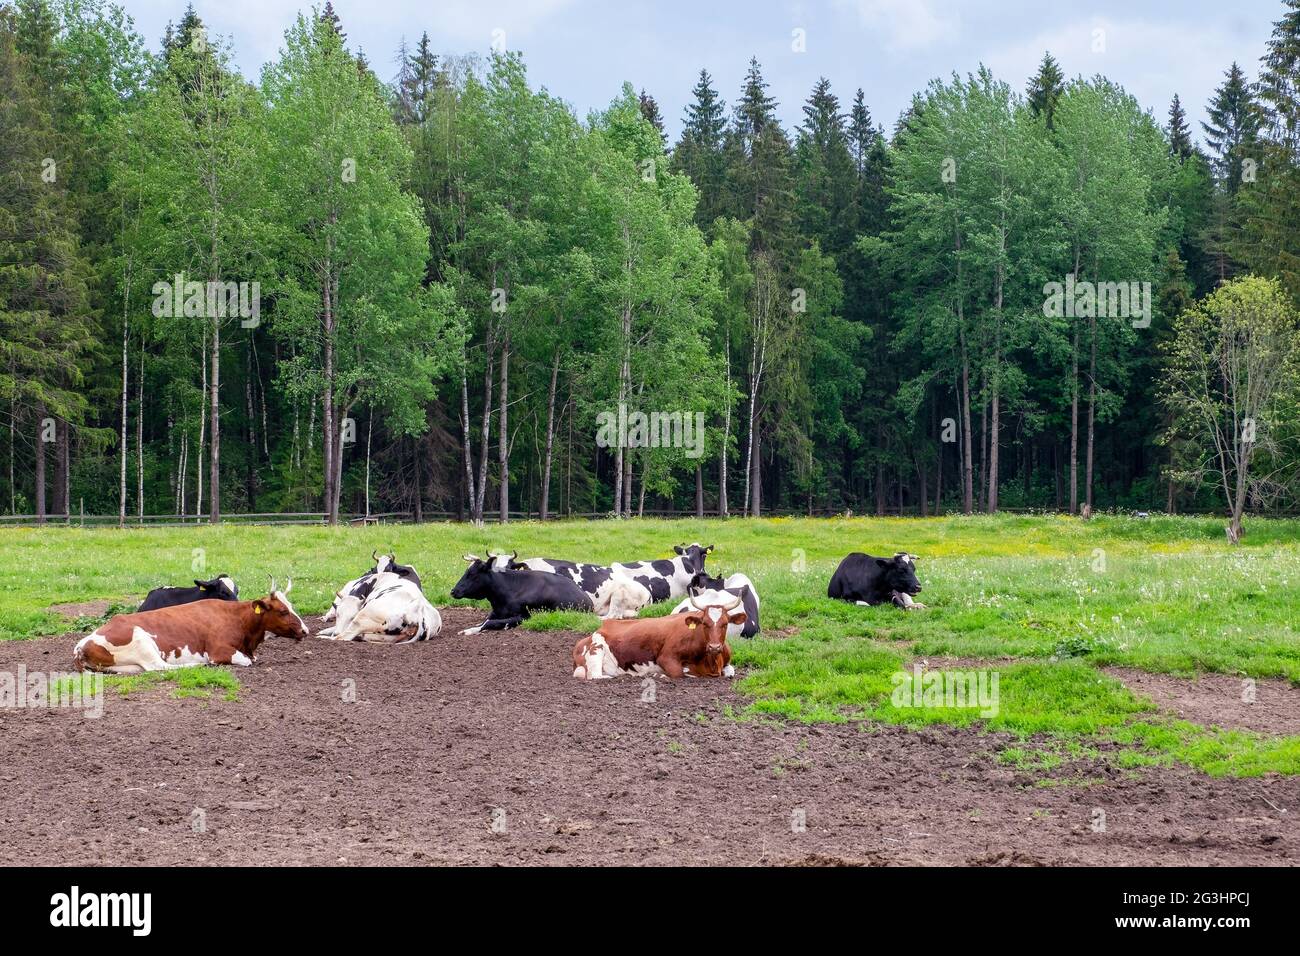 Le pâturage sur lequel reposent plusieurs vaches de ferme bien nourries Banque D'Images